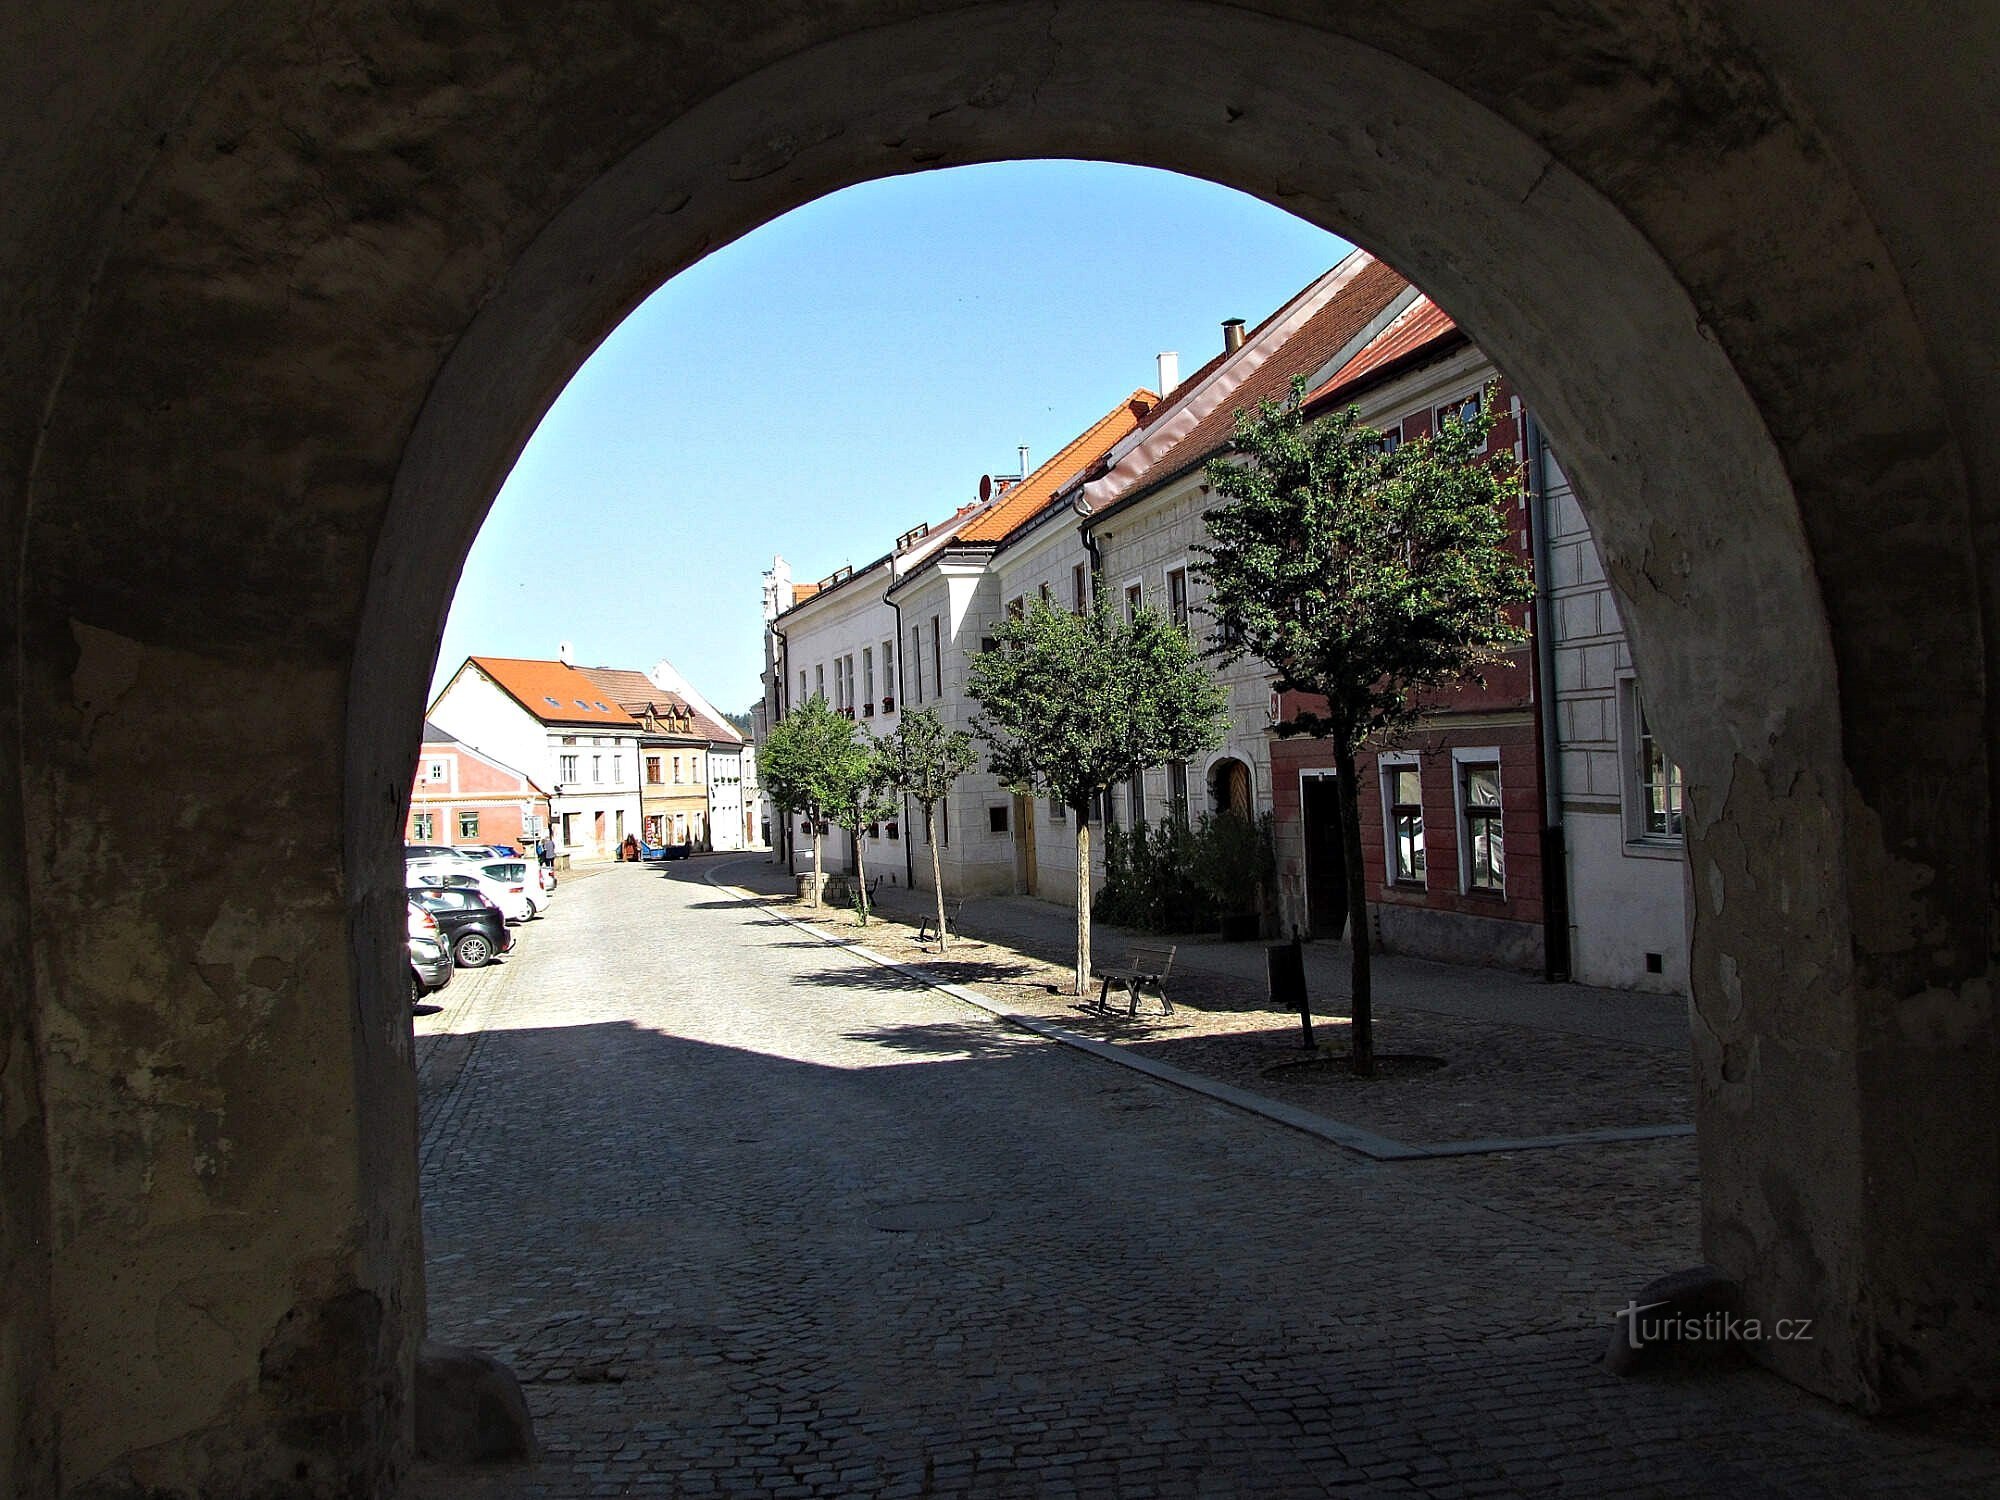 Slavonice - Jemnicka and Dačická gate